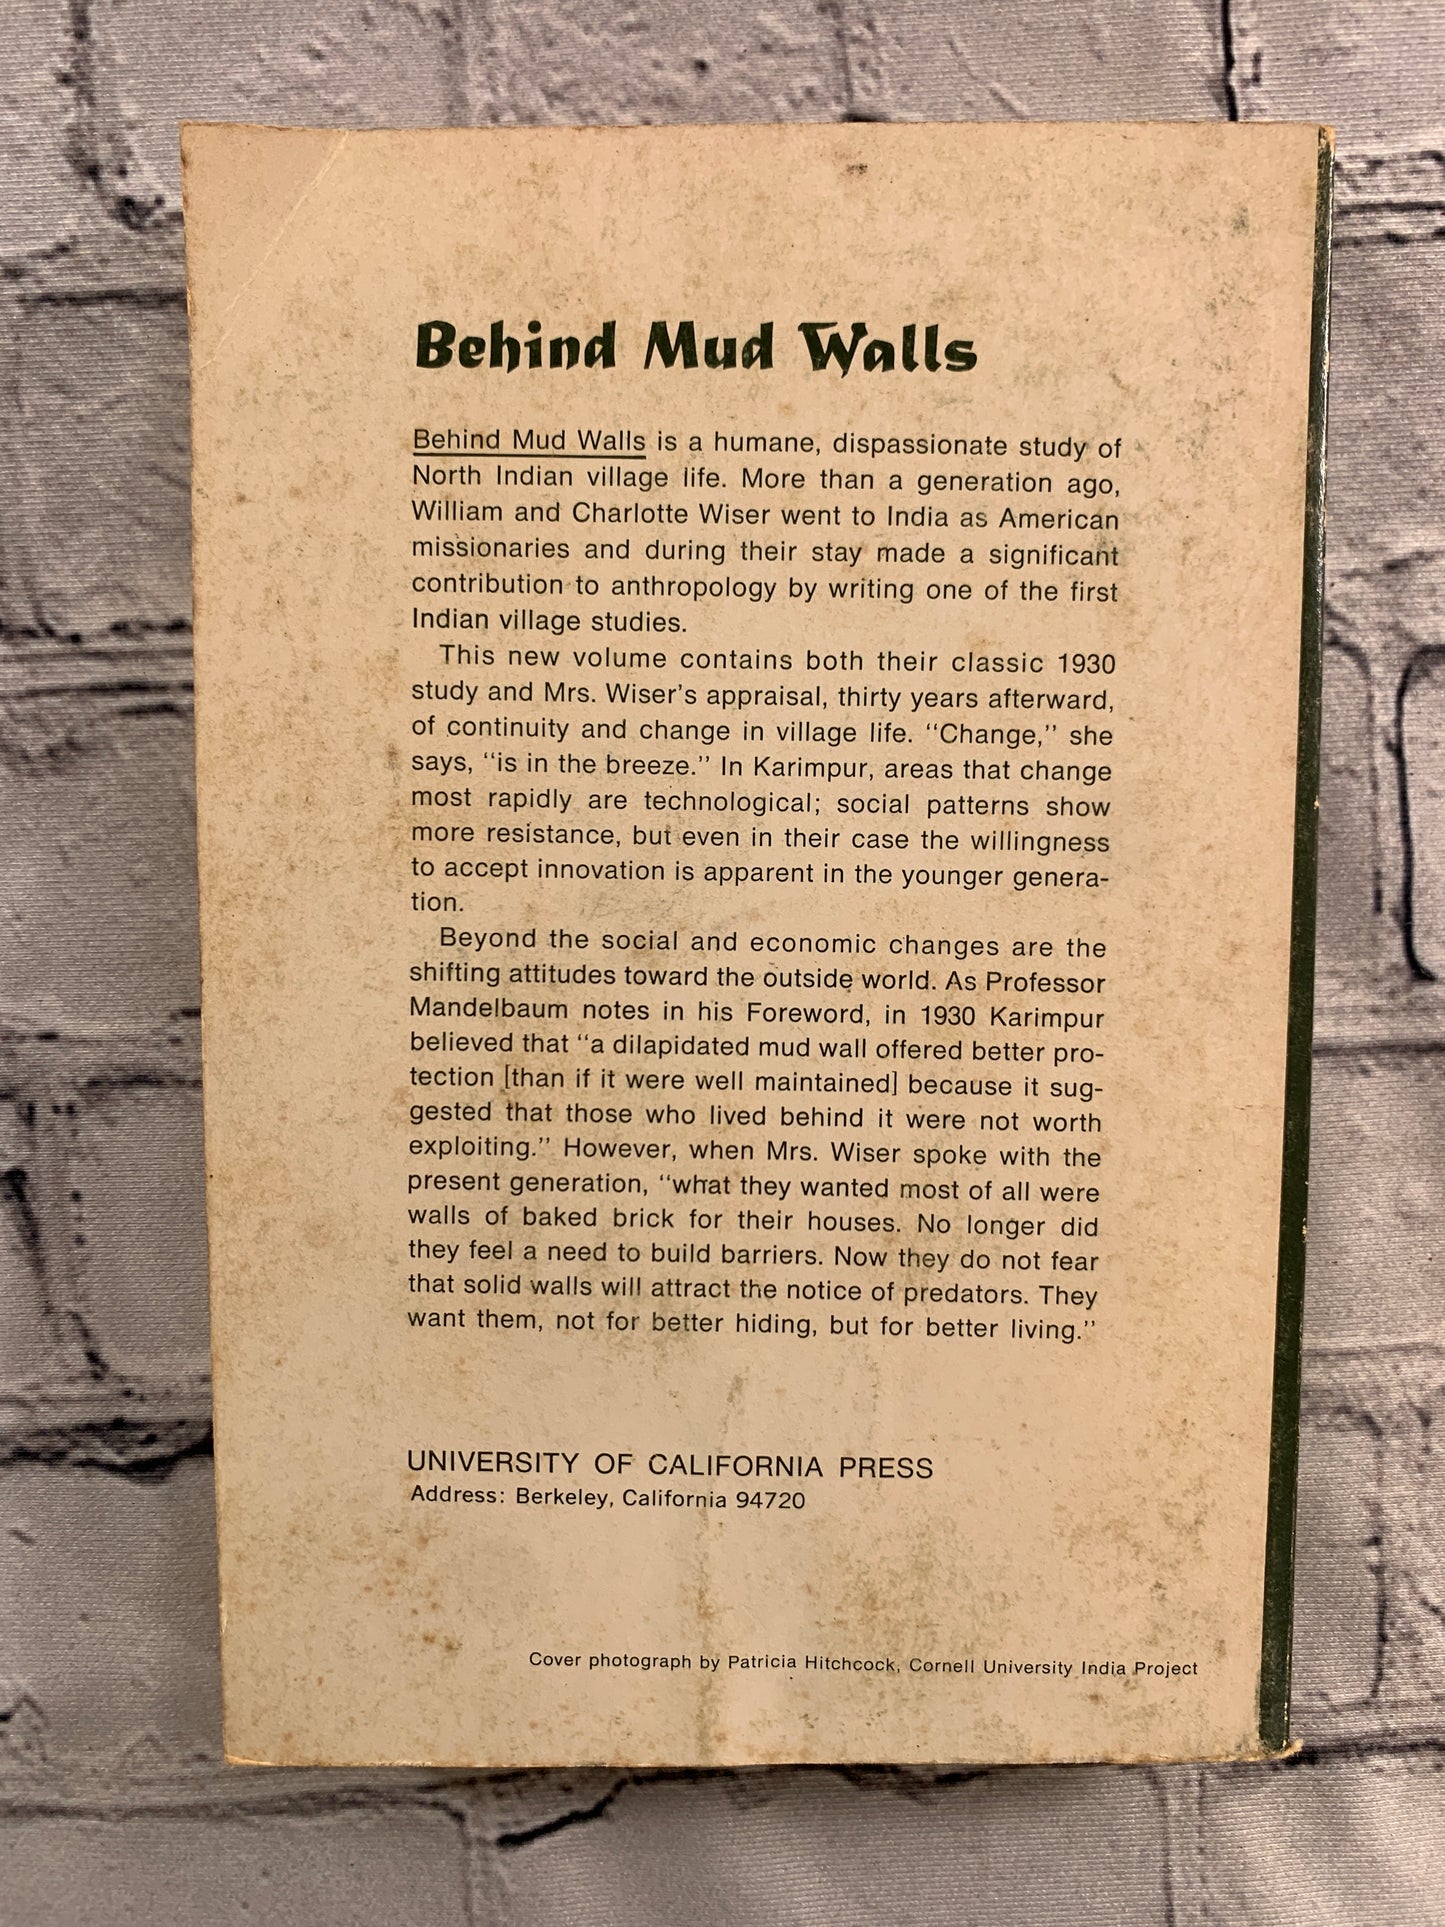 Behind Mud Walls 1930 - 1960 by William & Charlotte Wiser [1967]